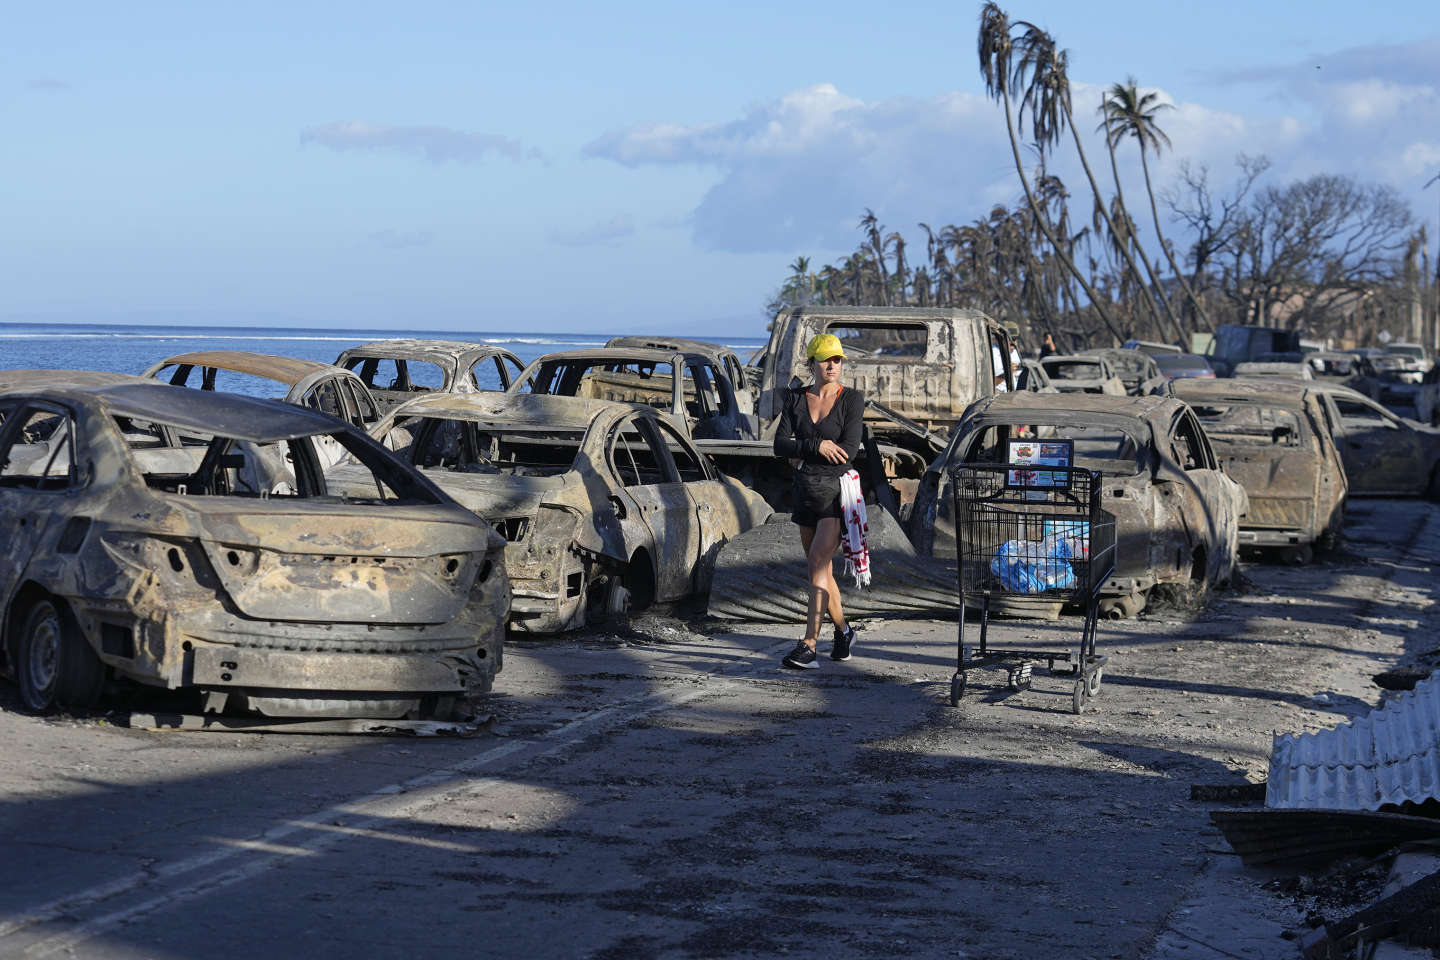 Le bilan des incendies à Hawaï augmente, passant à 93 morts